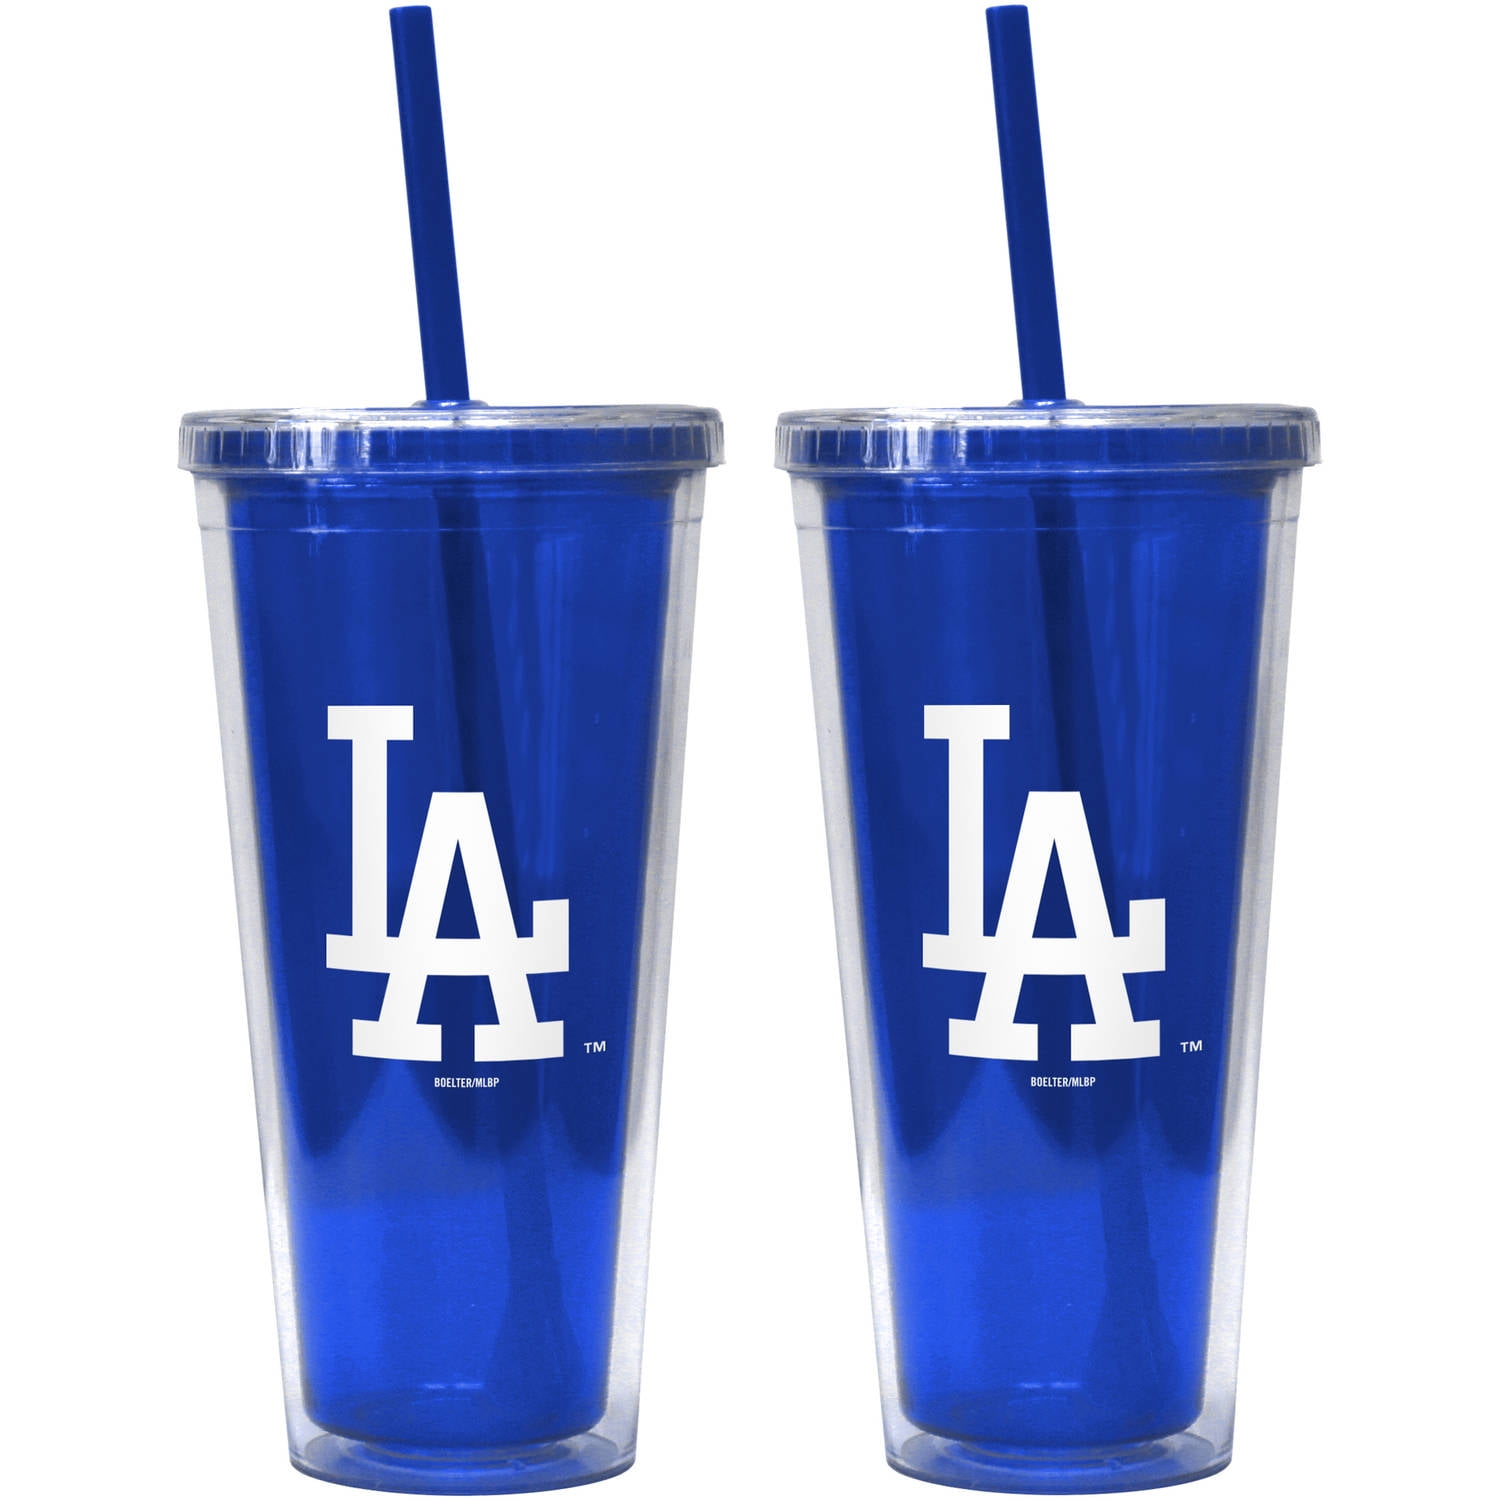 Los Angeles Dodgers colors